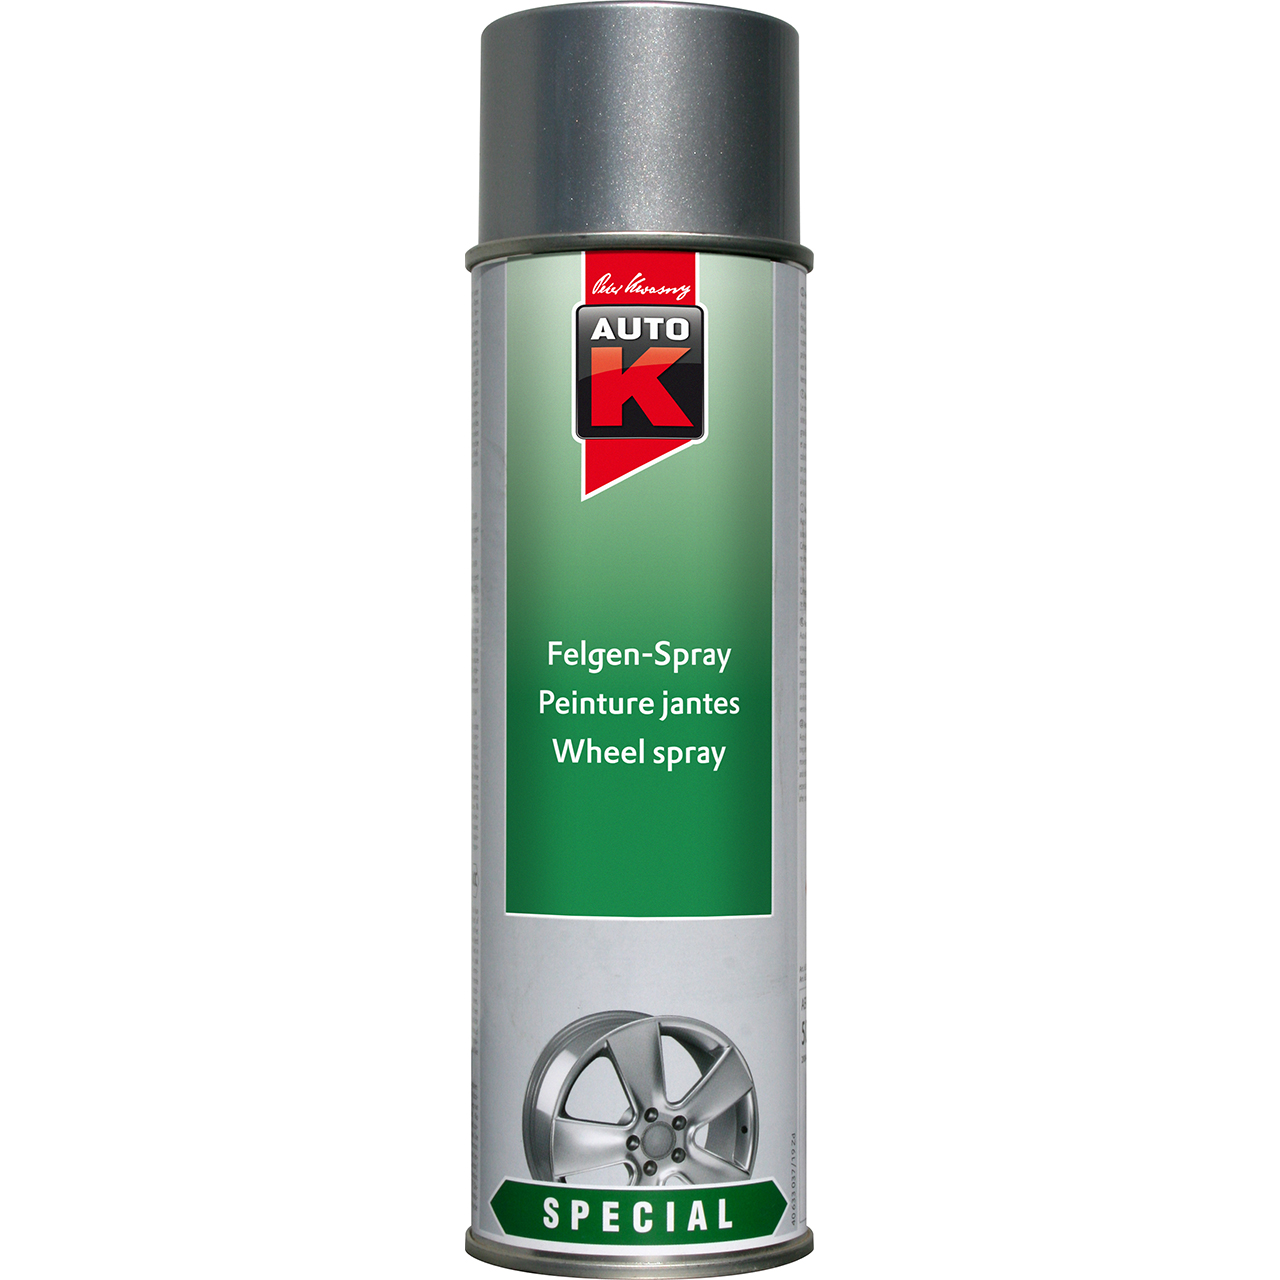 Auto-K Special Felgen-Spray kristallsilber 500ml